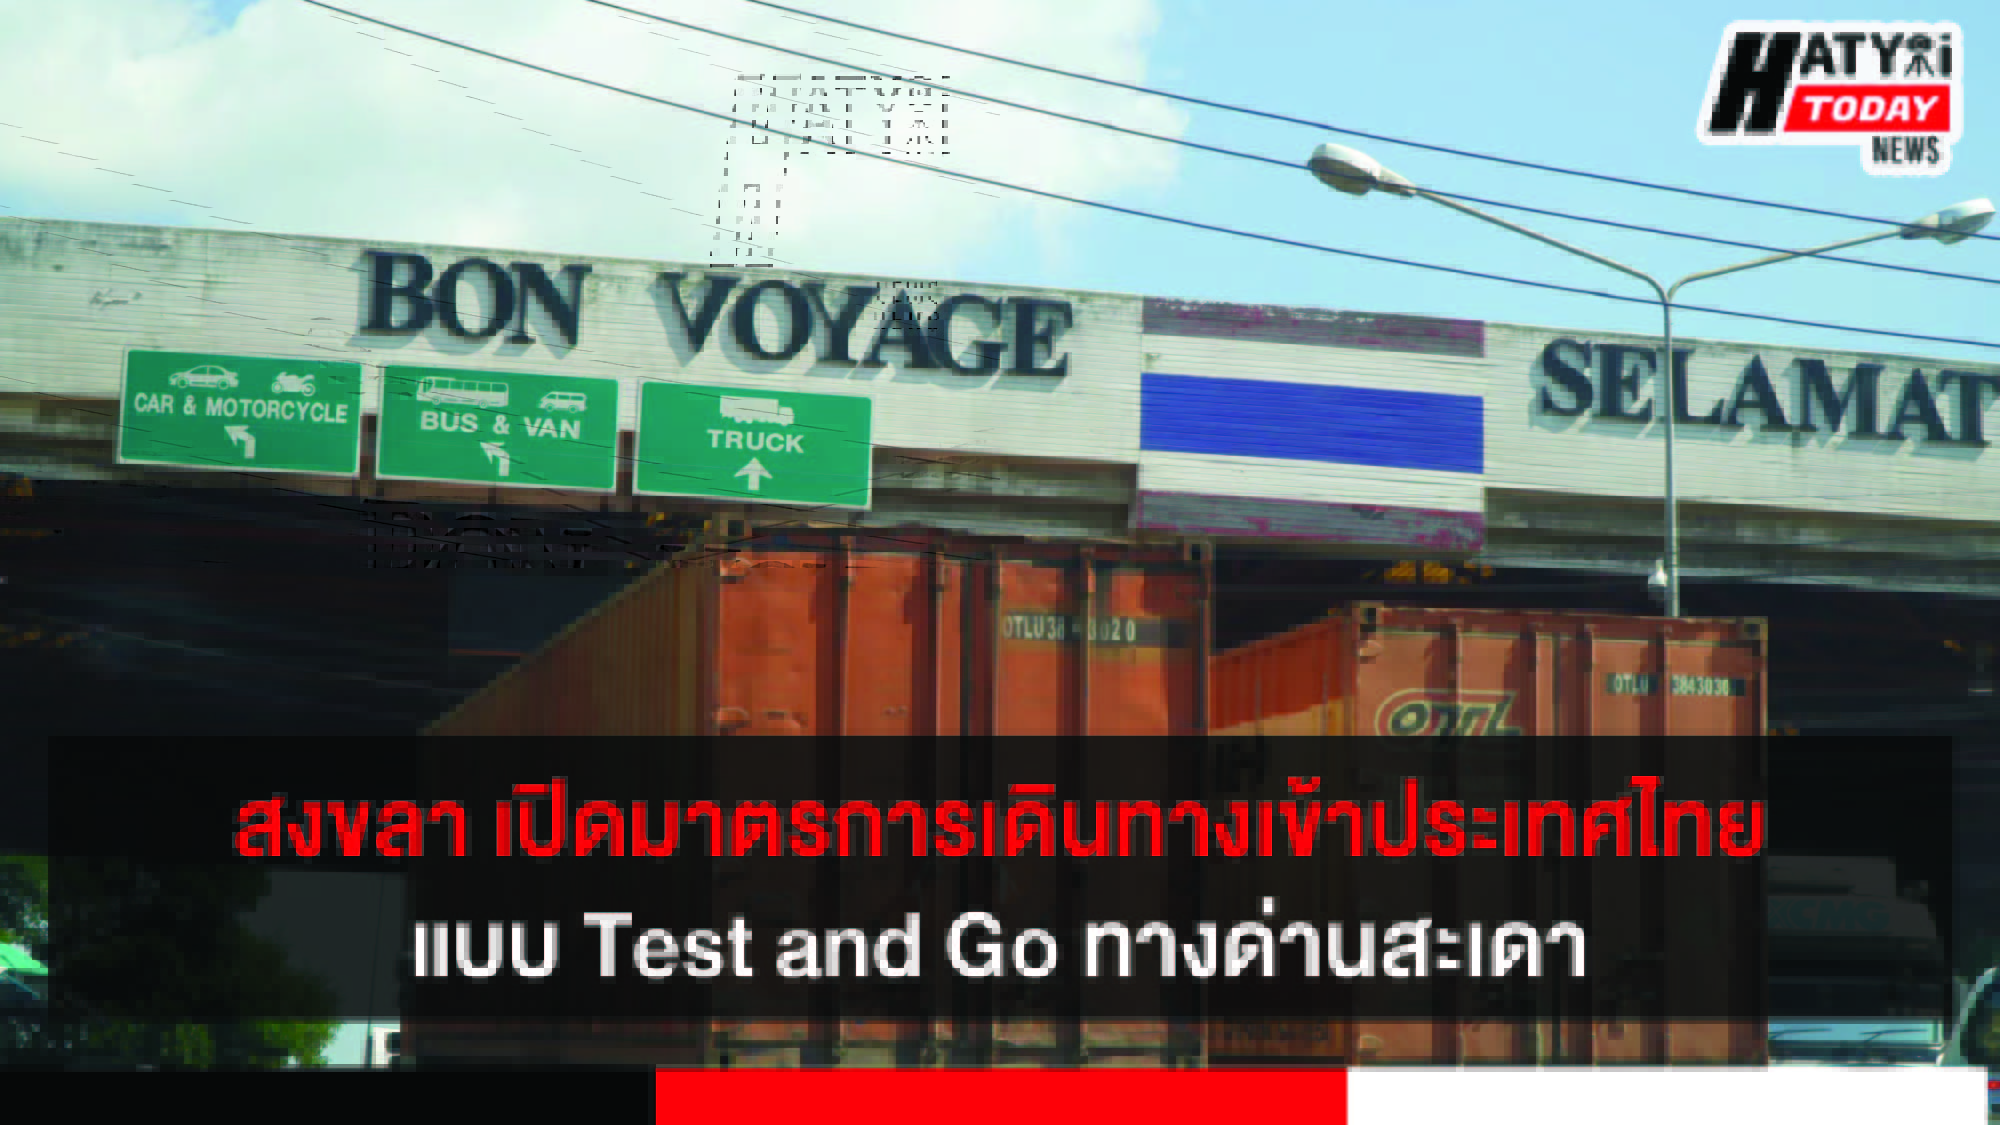 สงขลา เปิดมาตรการเดินทางเข้าประเทศไทยแบบ Test and Go ทางด่านสะเดา